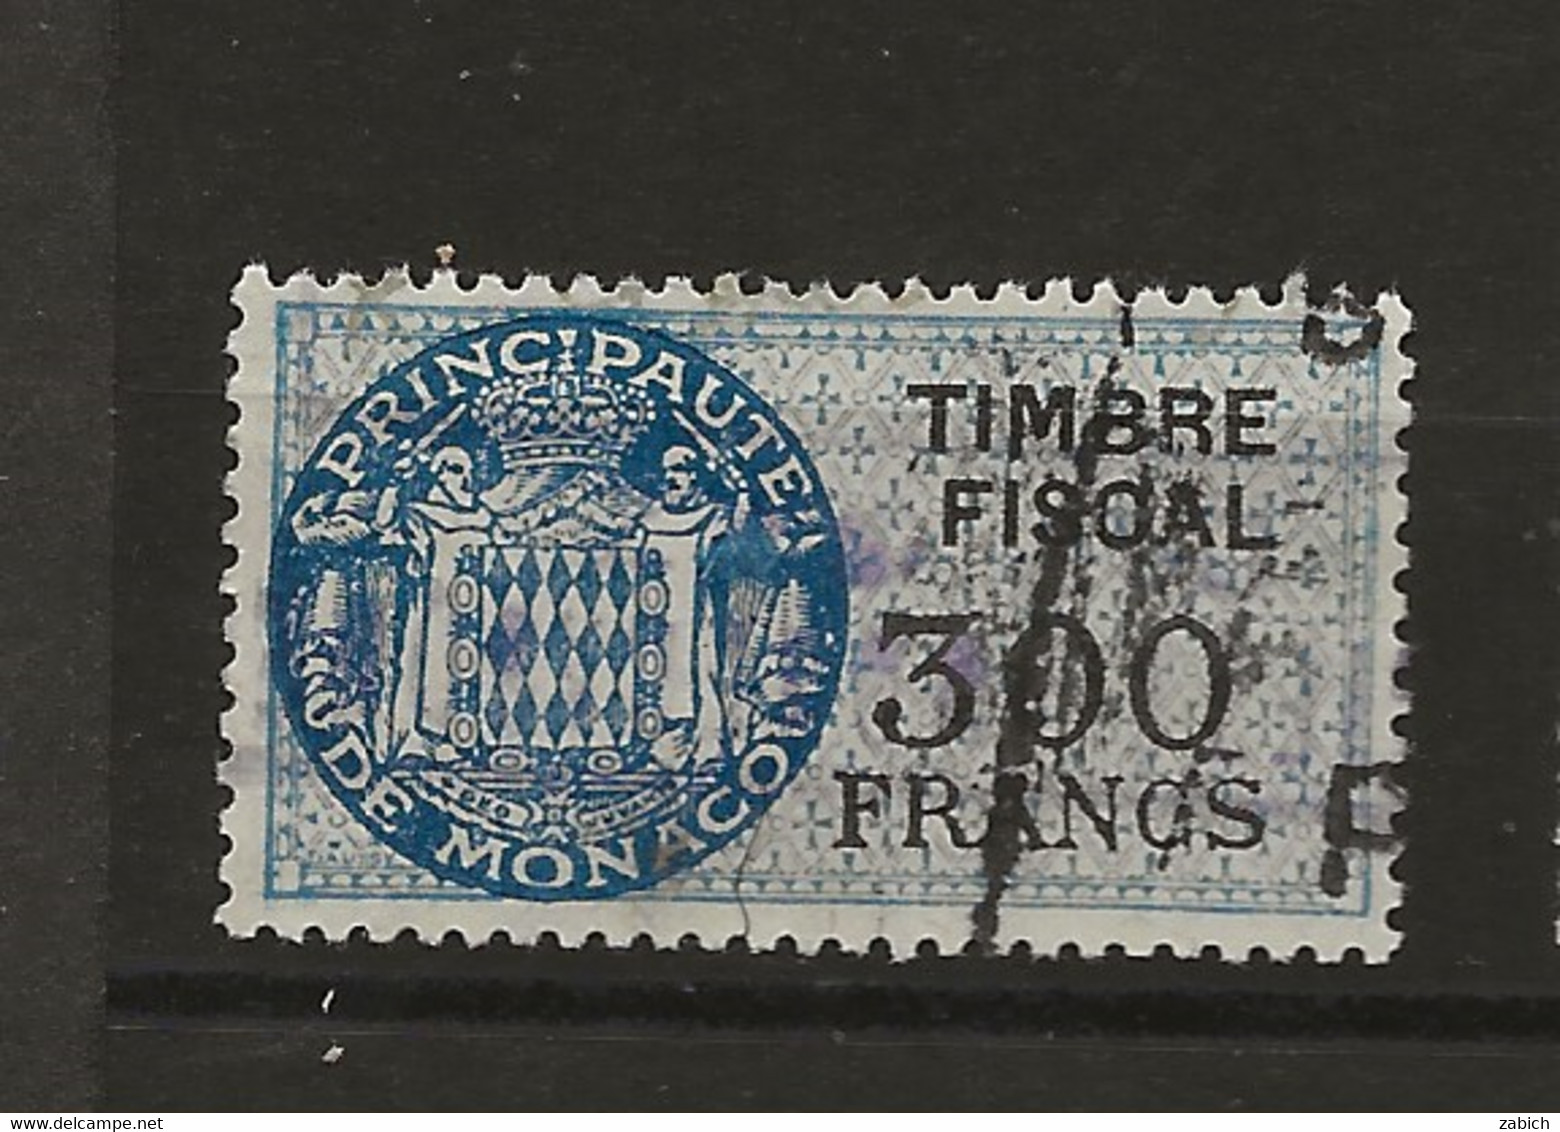 TIMBRES FISCAUX DE MONACO SERIE UNIFIEE  De 1949   N°17  300 Francs Bleu Oblitéré Cote 60 € - Fiscales